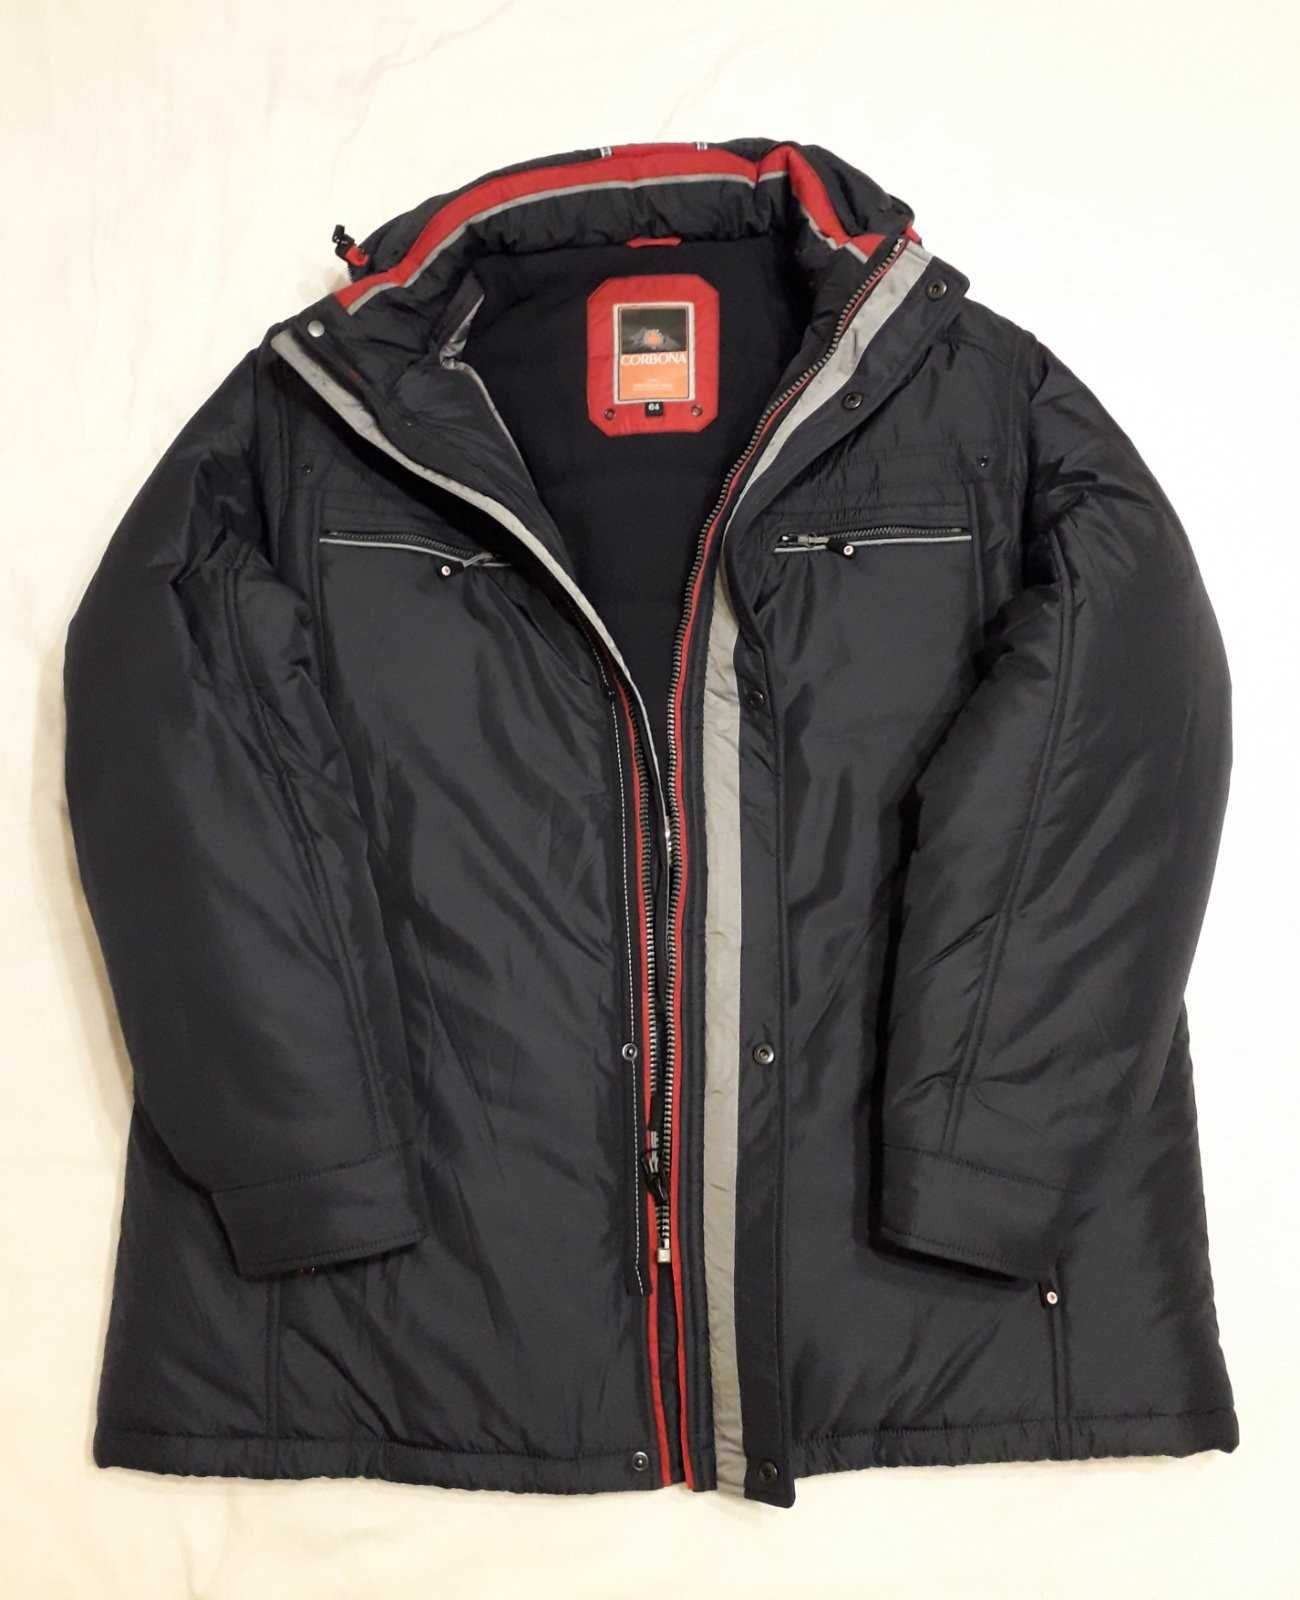 Продам Куртку мужскую новую зимнюю - CORBONA  батальный размер.